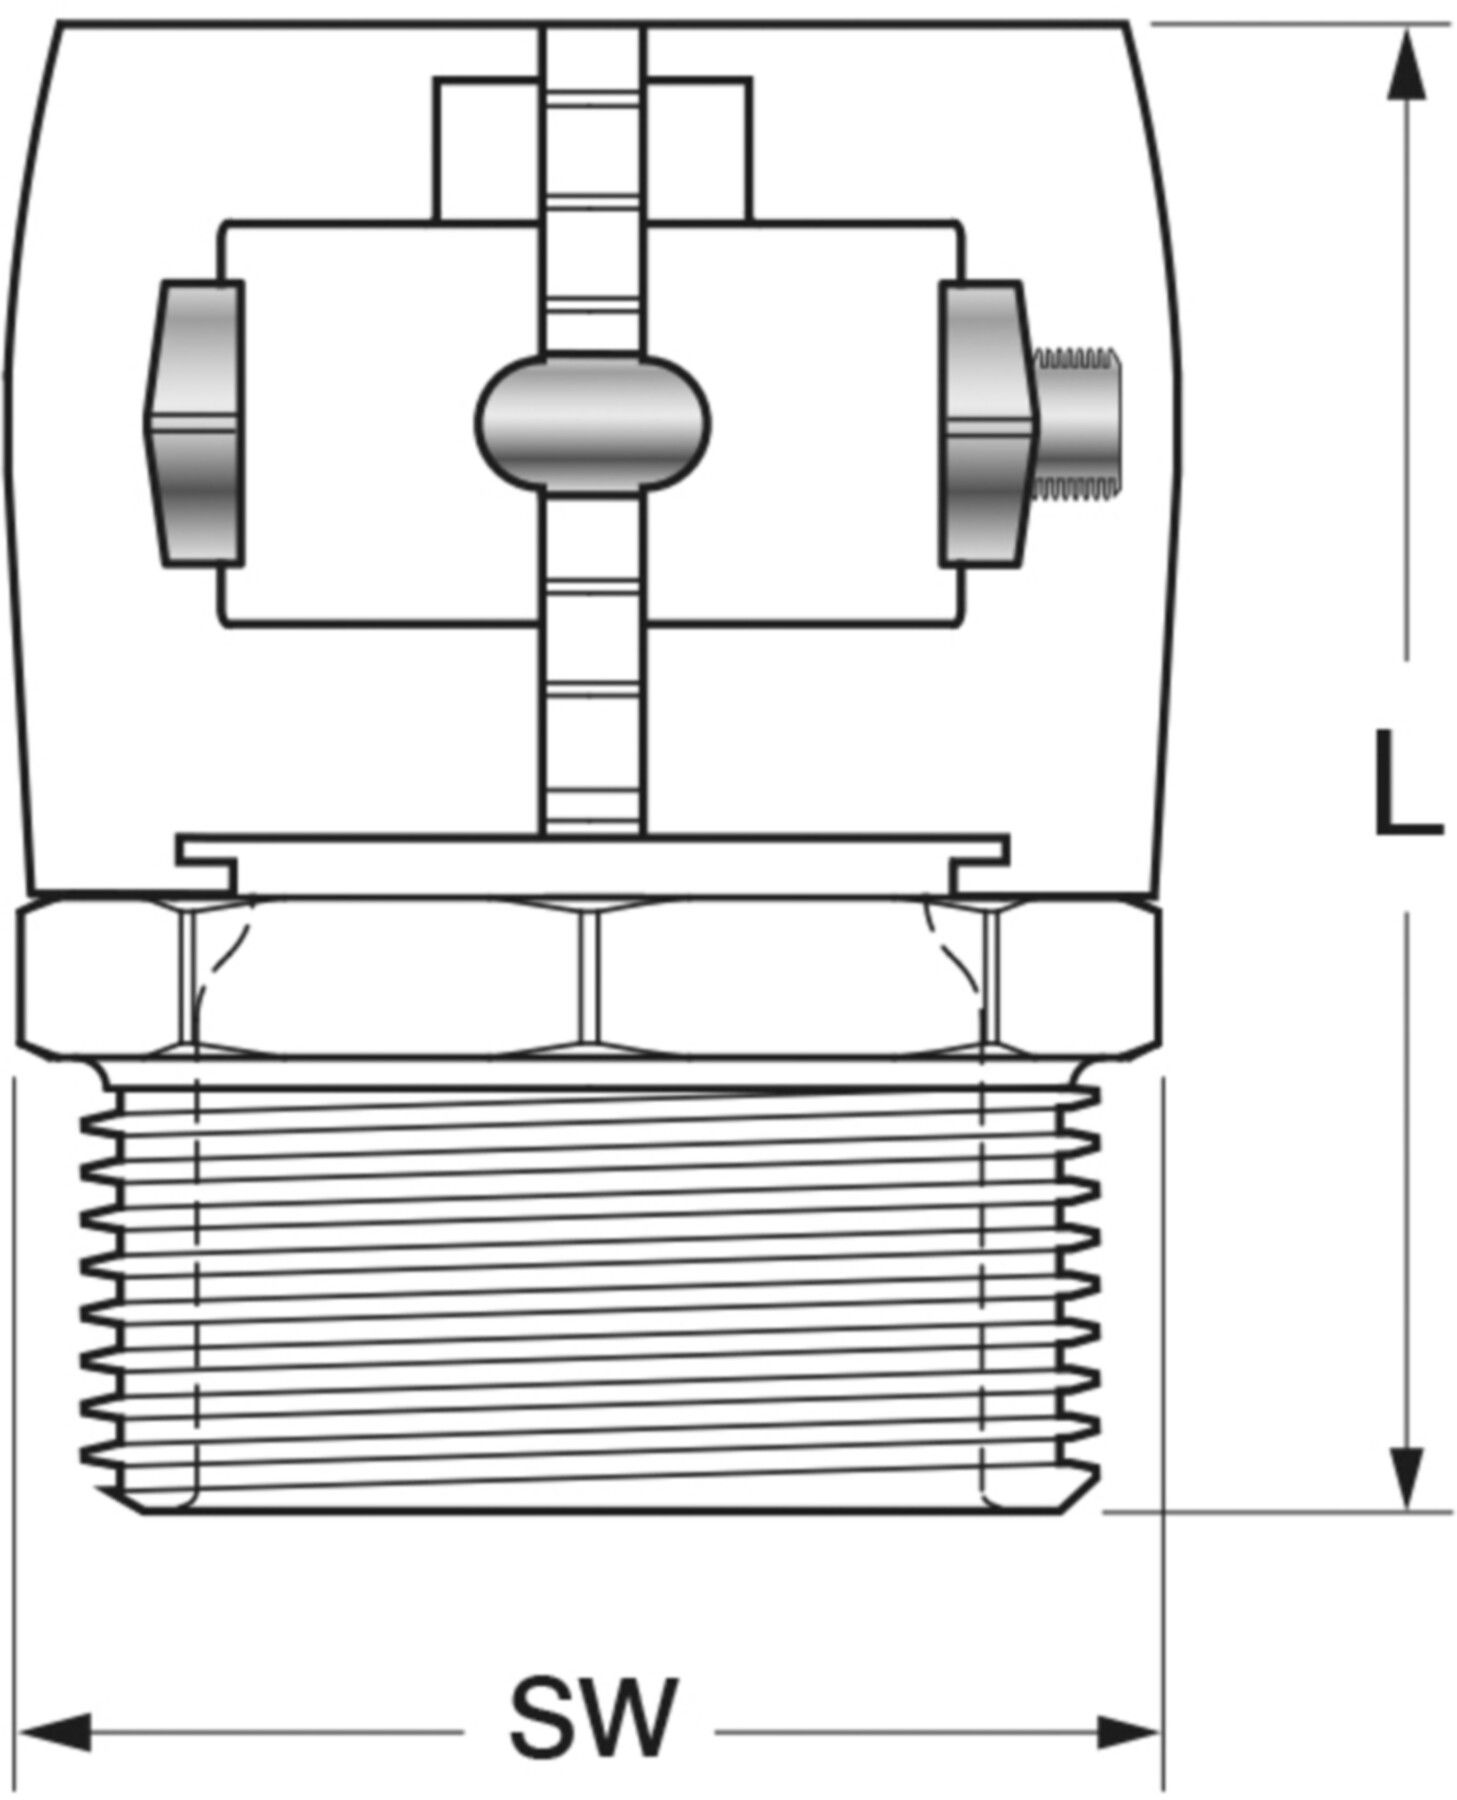 Klemm-Verbindungen mit Aussengewinde Jentro S - 20 1/2" - Isopex Fernwärmeleitung